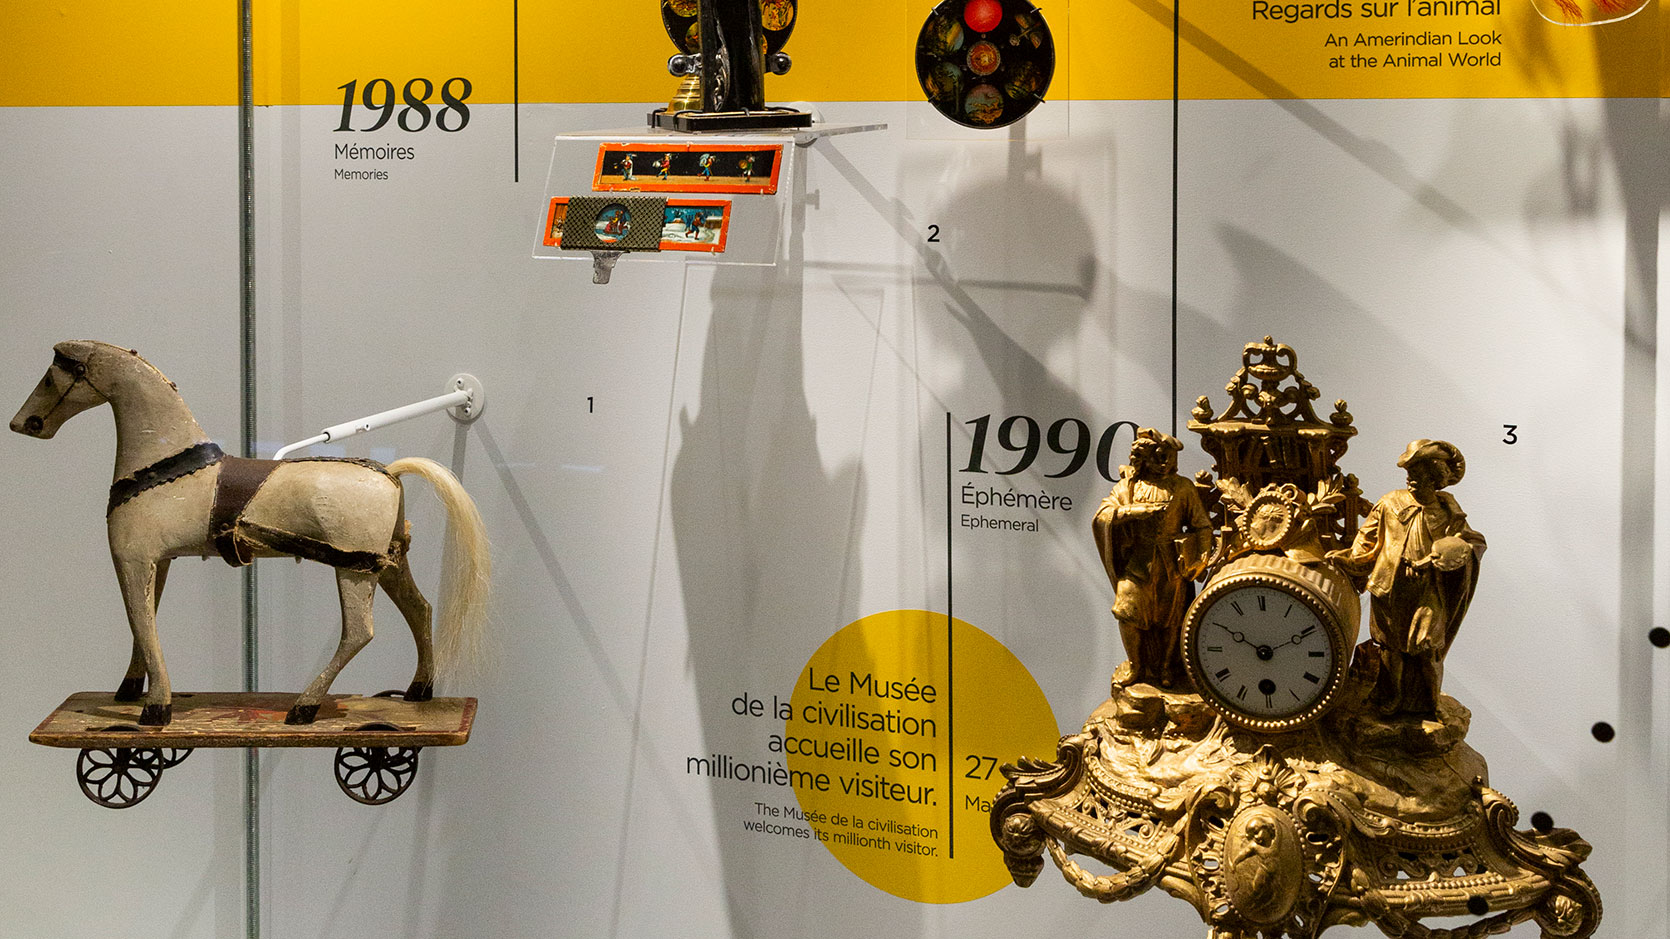 Objets en vitrine alignés sur une ligne du temps représentants les expositions marquantes du Musée. On y voit un cheval de bois jouet, une horloge de table sculpté et d'autres parties d'objets.